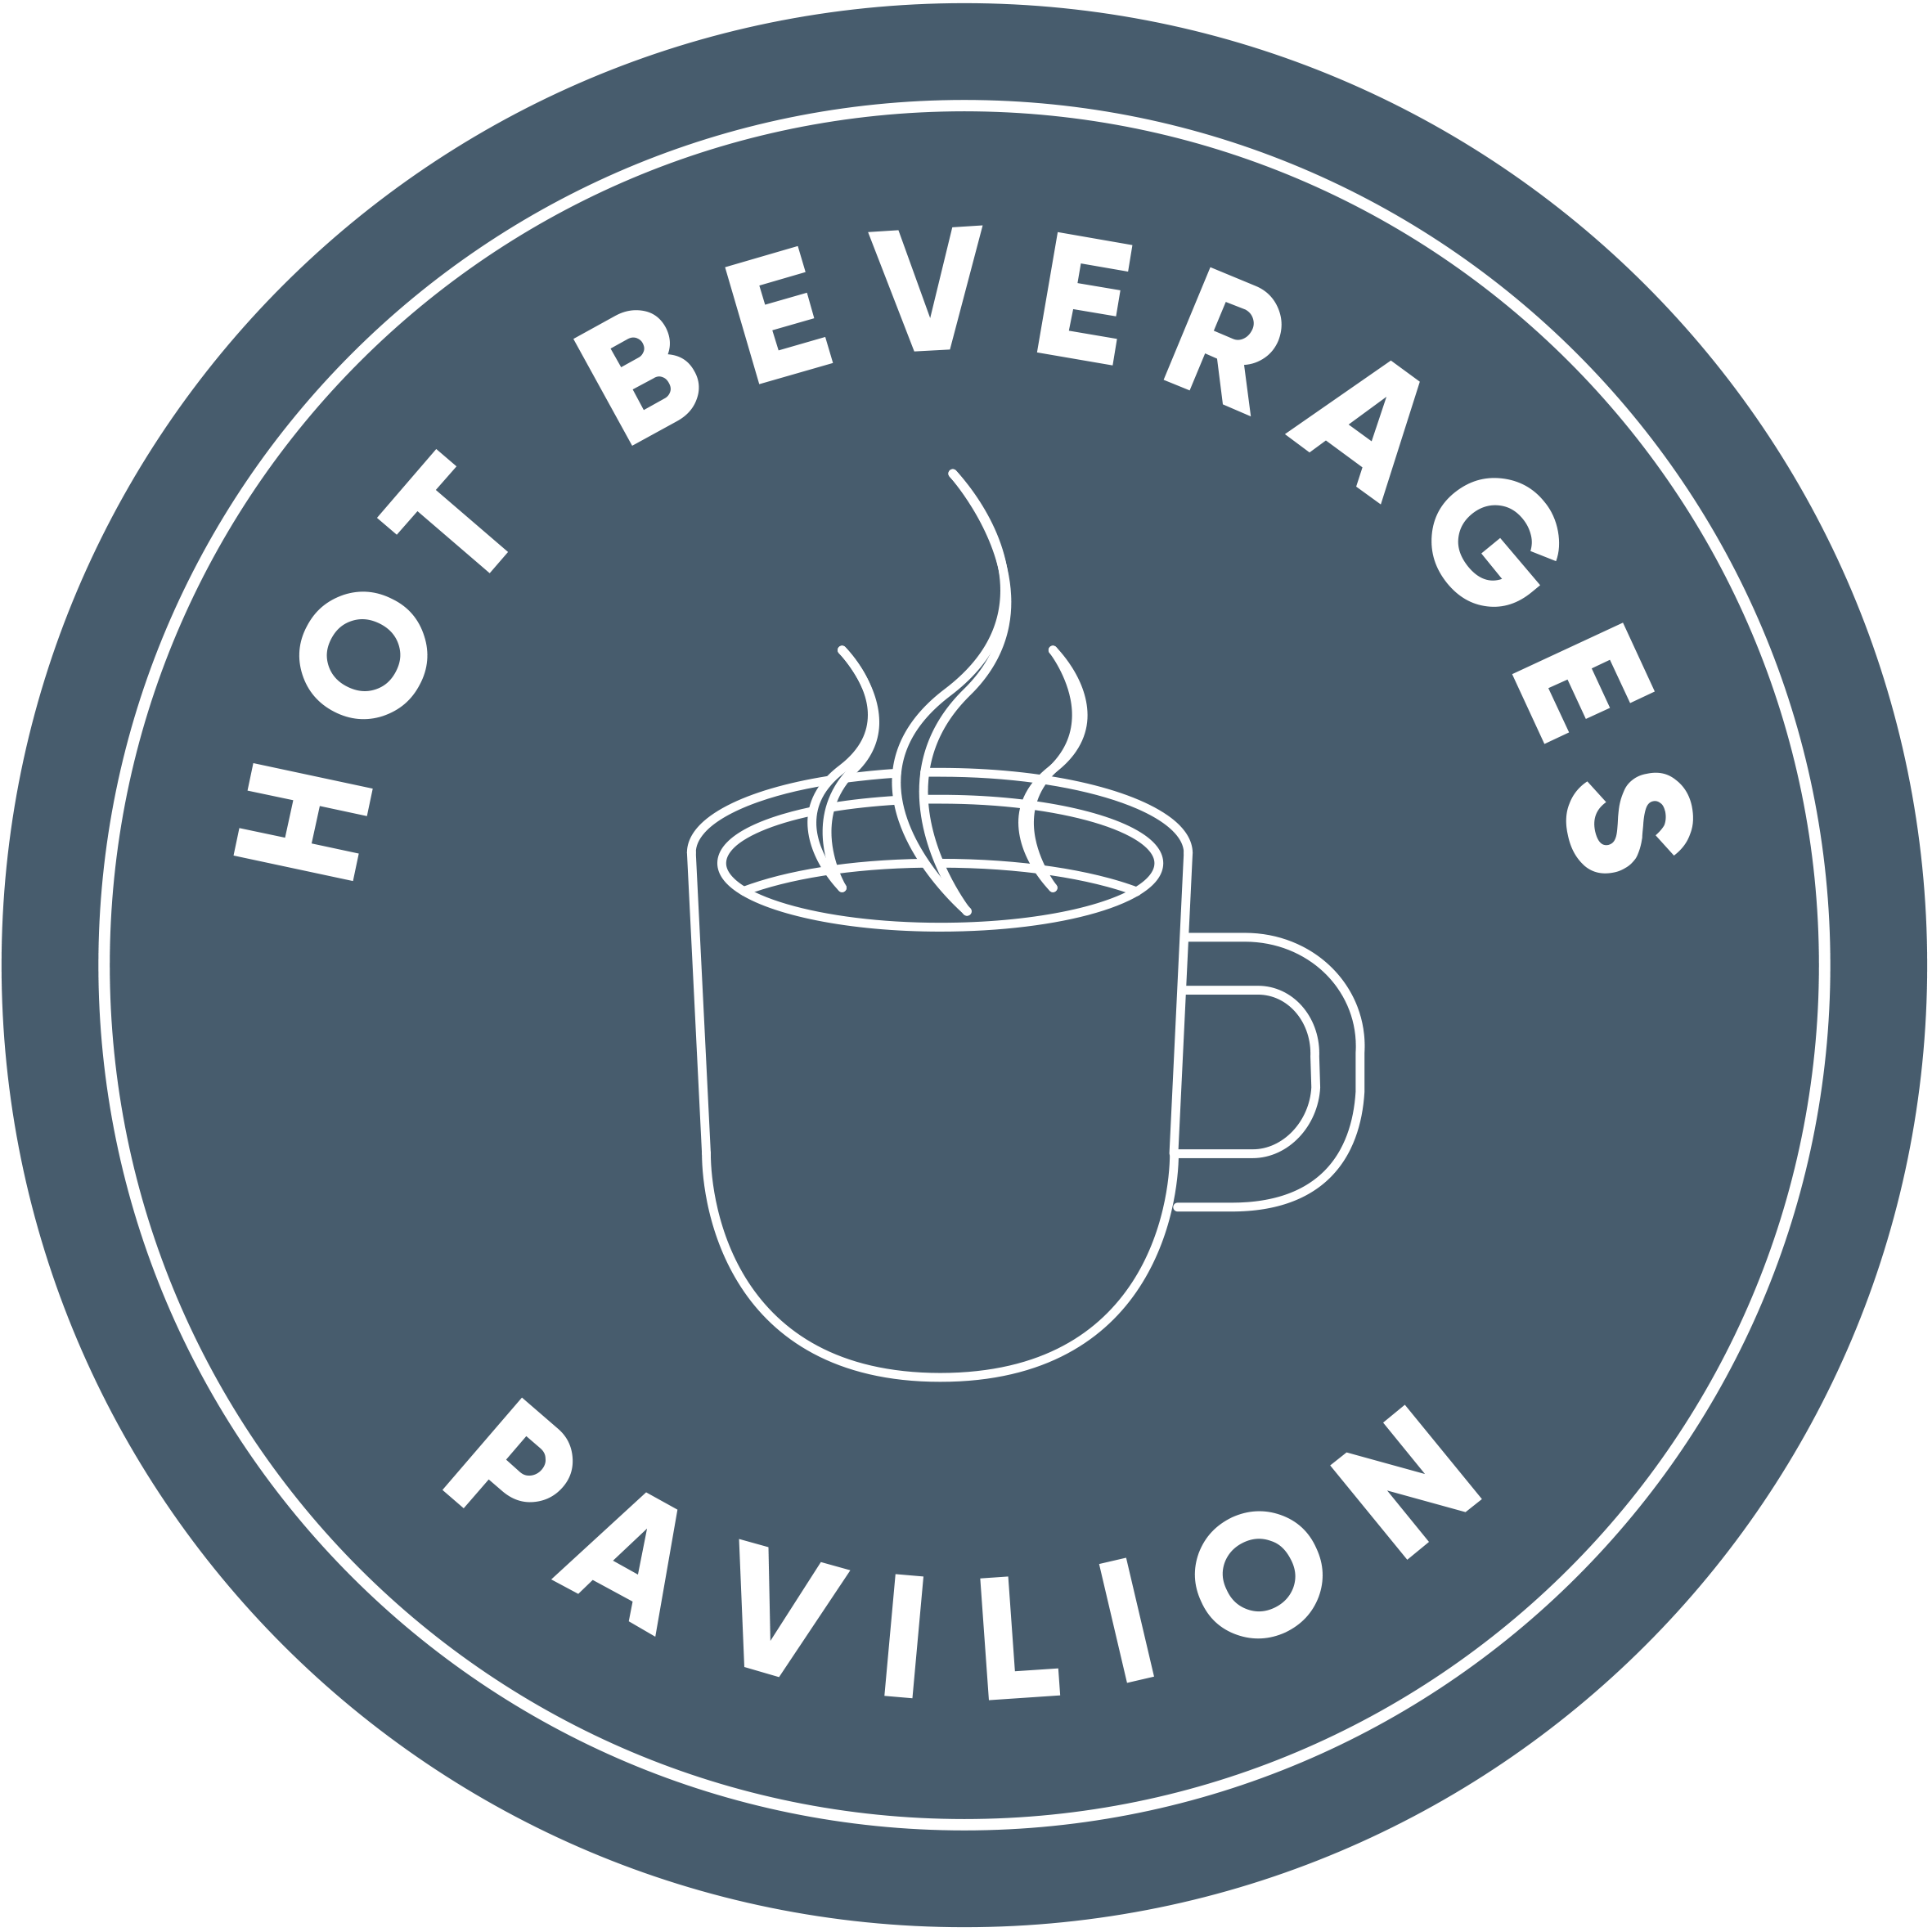 Hot Beverages Pavilion